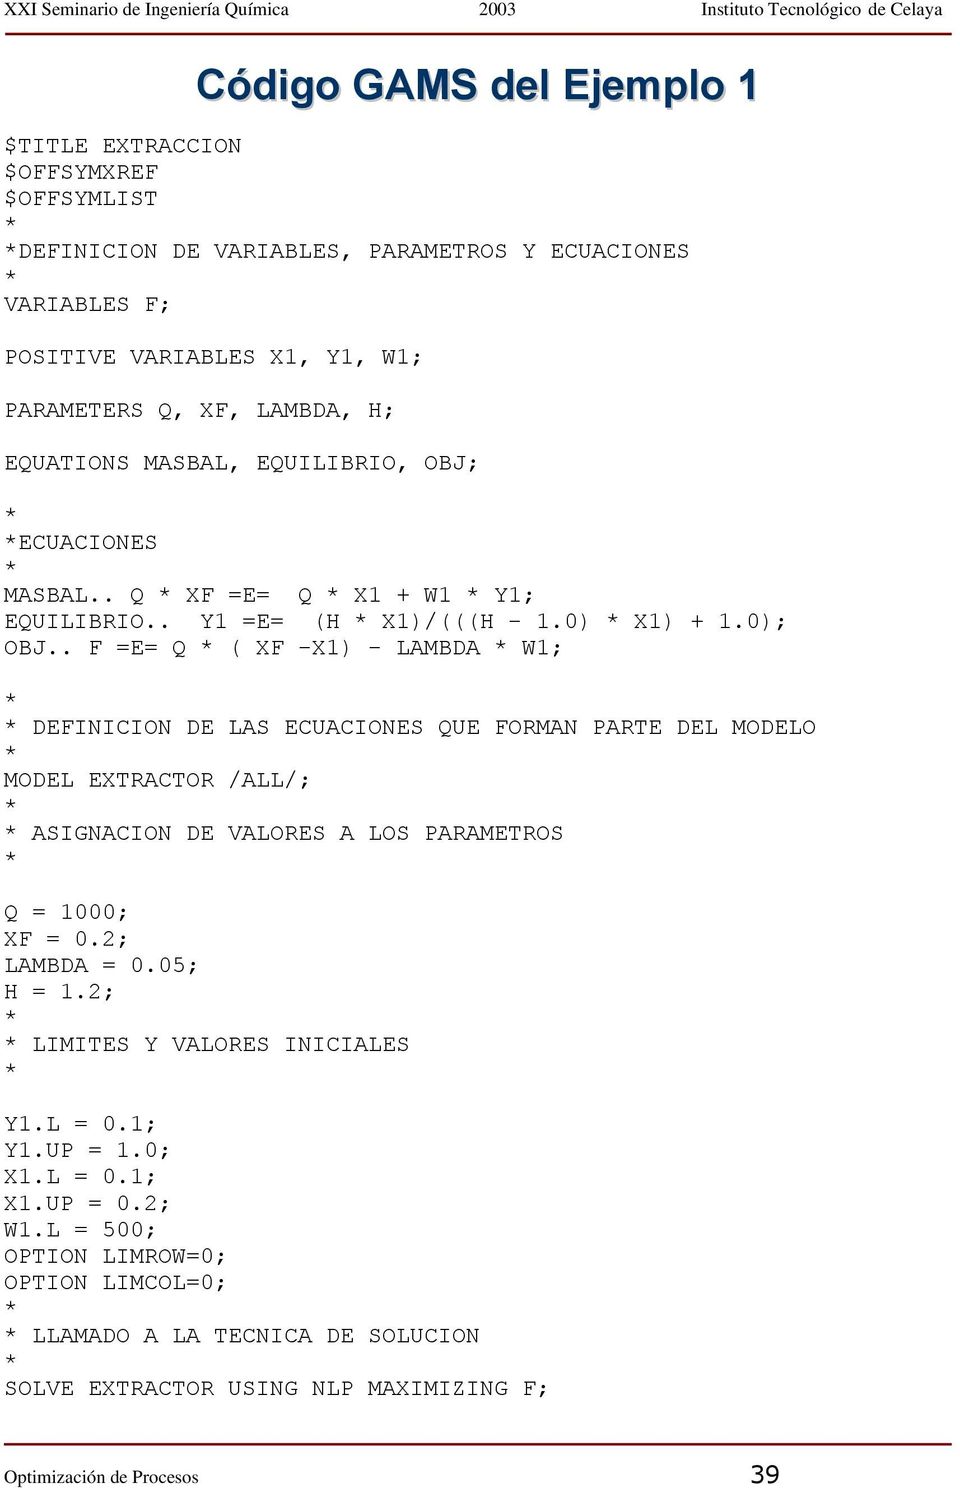 . F =E= Q ( XF -X1) - LAMBDA W1; DEFINICION DE LAS ECUACIONES QUE FORMAN PARTE DEL MODELO MODEL EXTRACTOR /ALL/; ASIGNACION DE VALORES A LOS PARAMETROS Q = 1000; XF = 0.2; LAMBDA = 0.